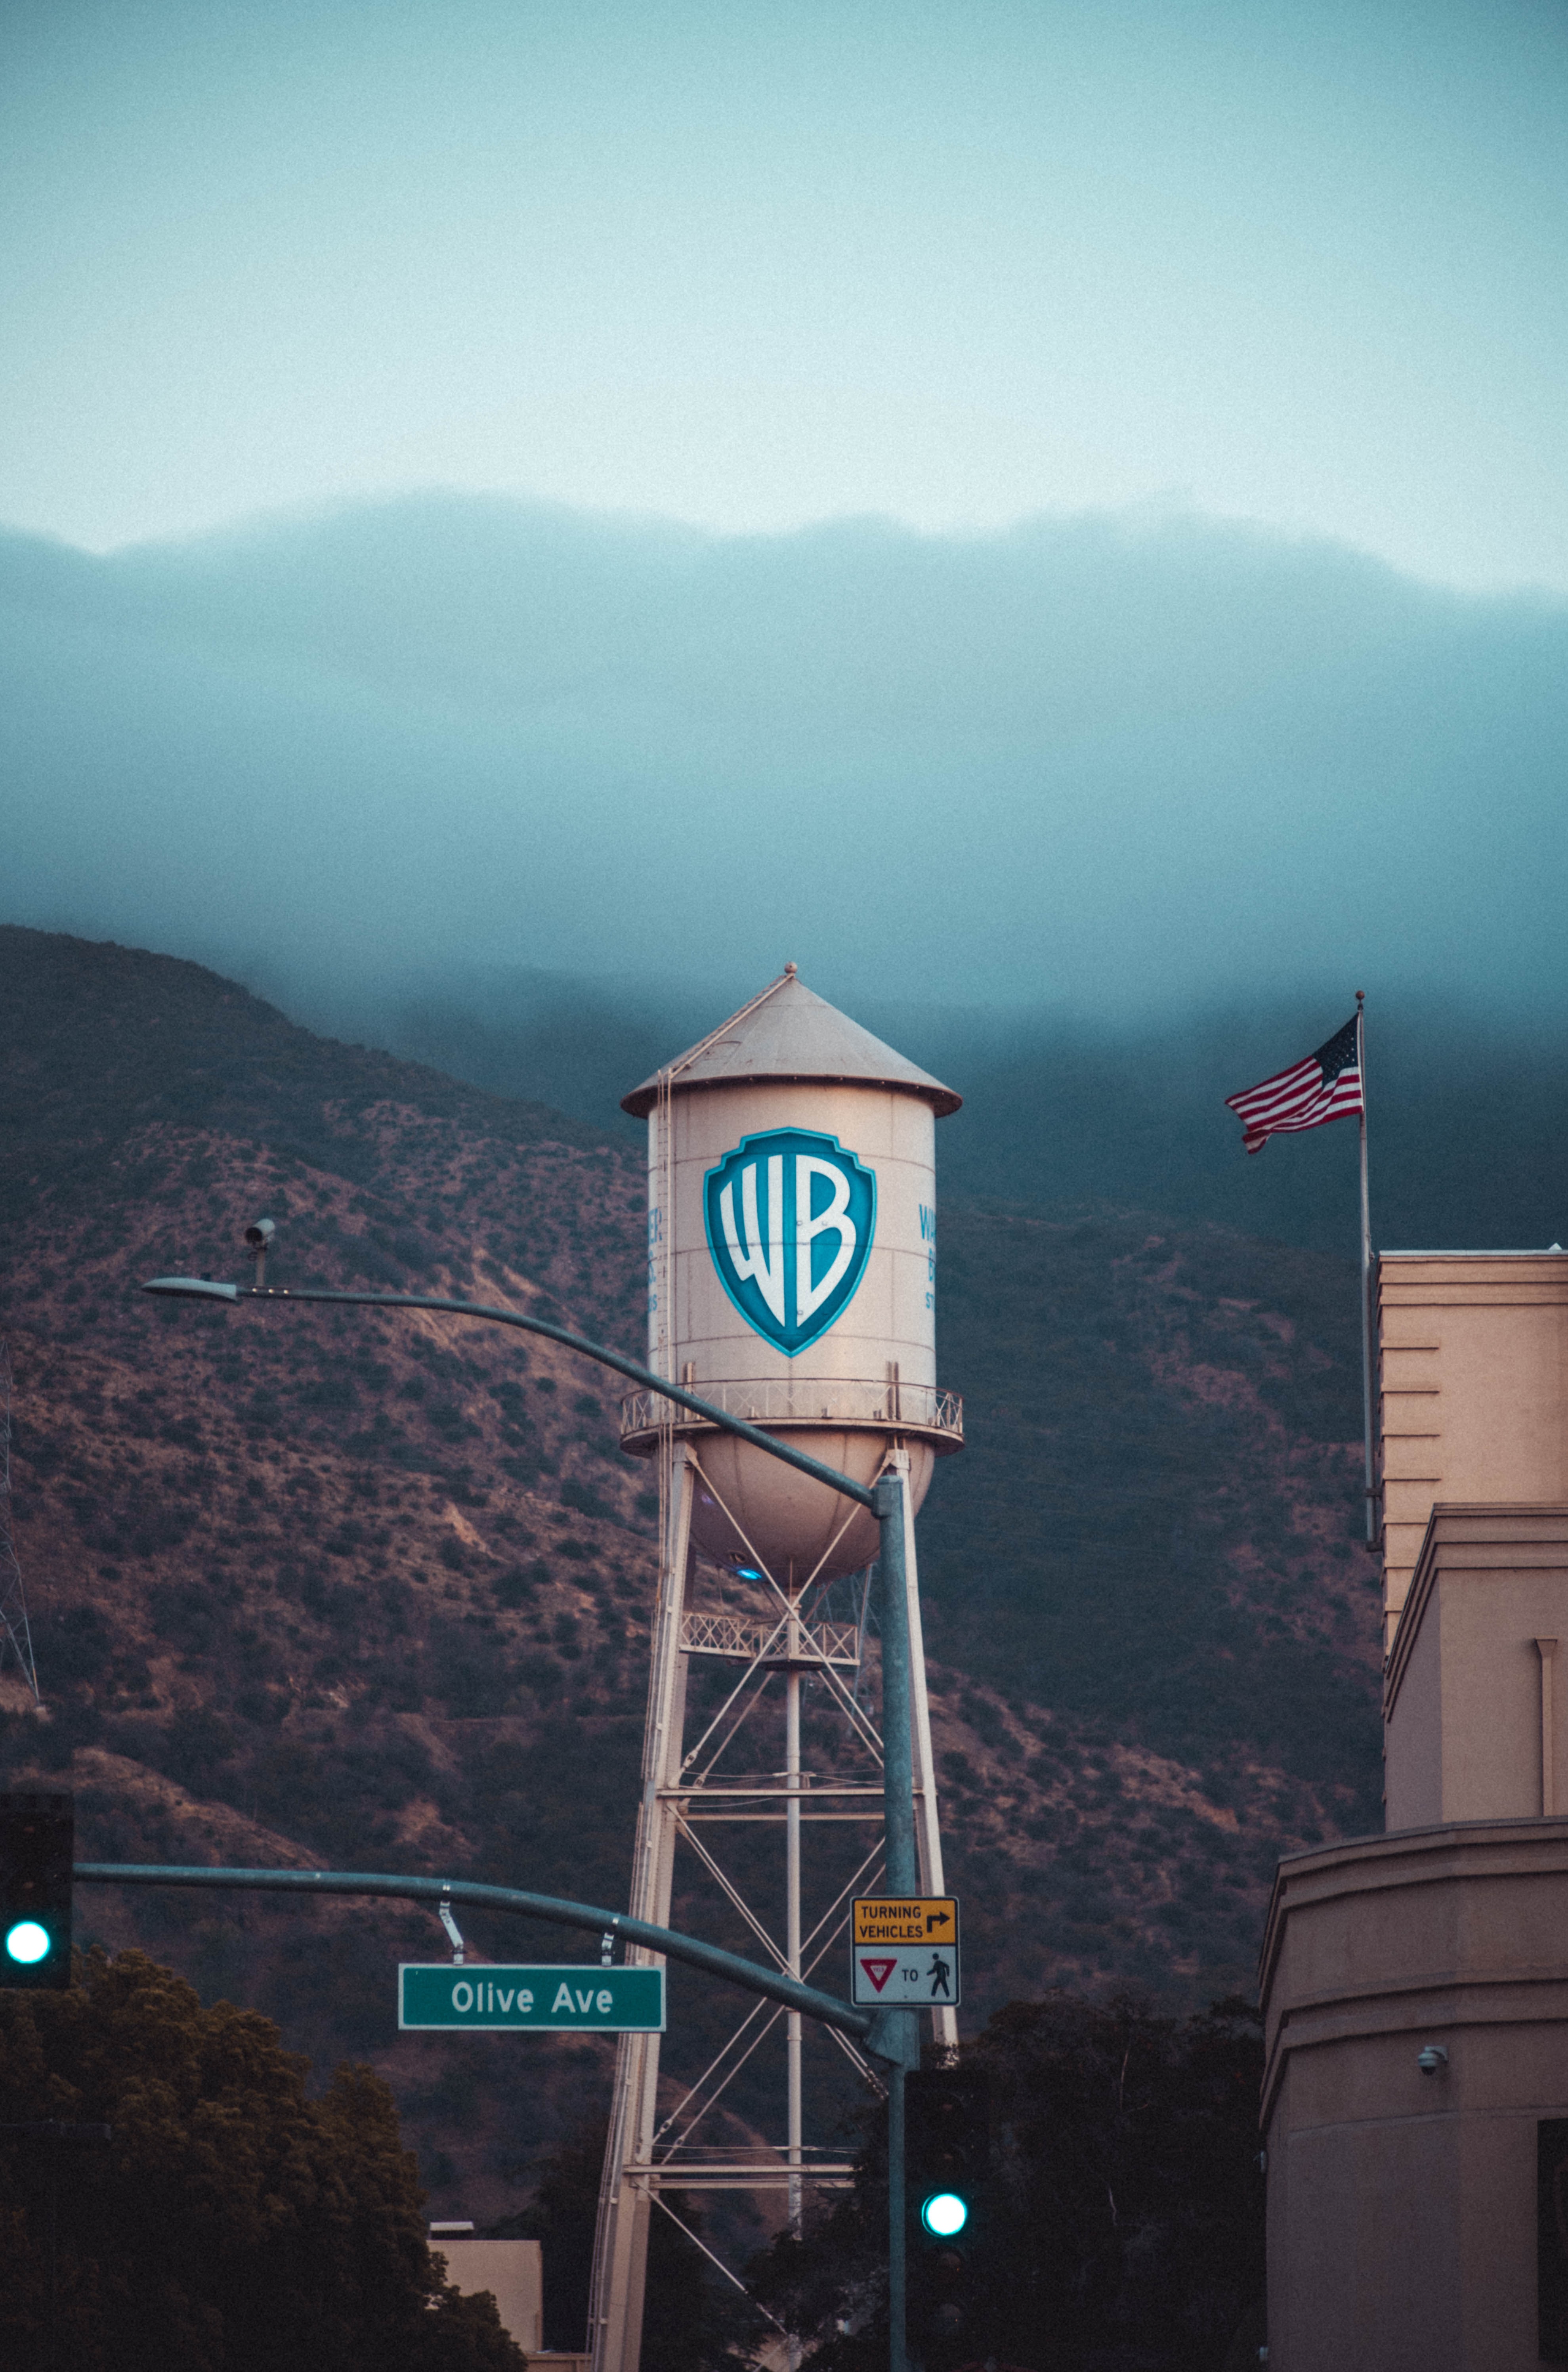 Štrajky spôsobujú Warner Bros problémy